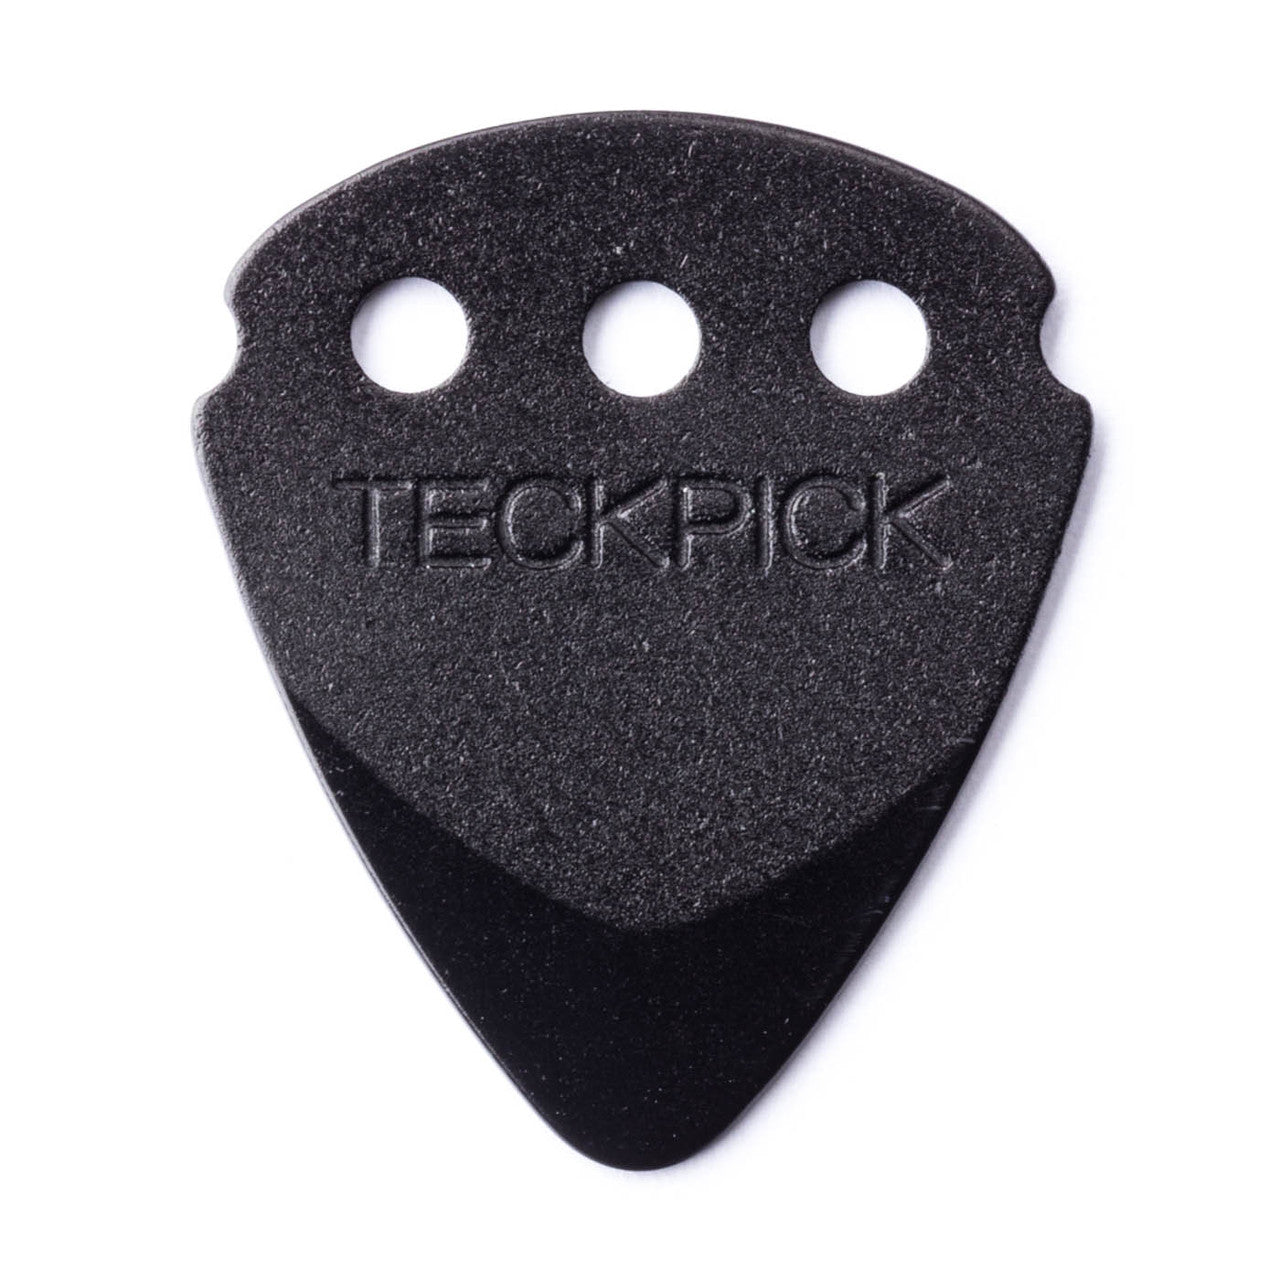 Dunlop Teckpick® Standard Black Aluminum